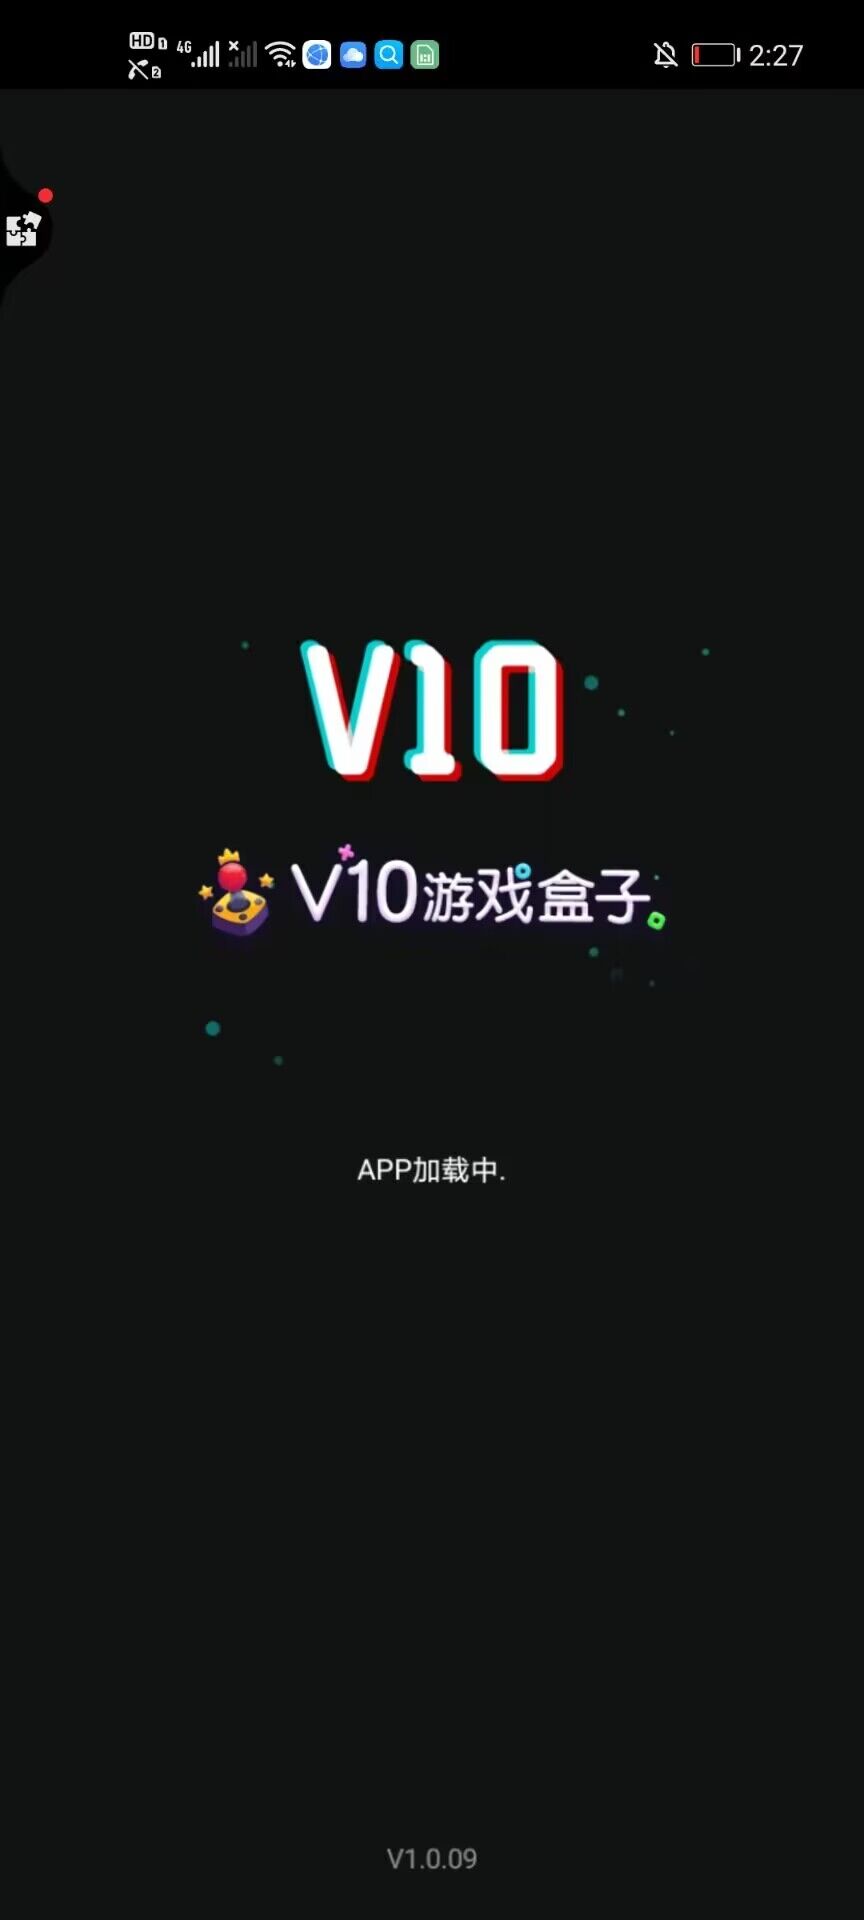 V10游戏盒子安卓版下载-V10游戏盒子app下载v1.0.09图2